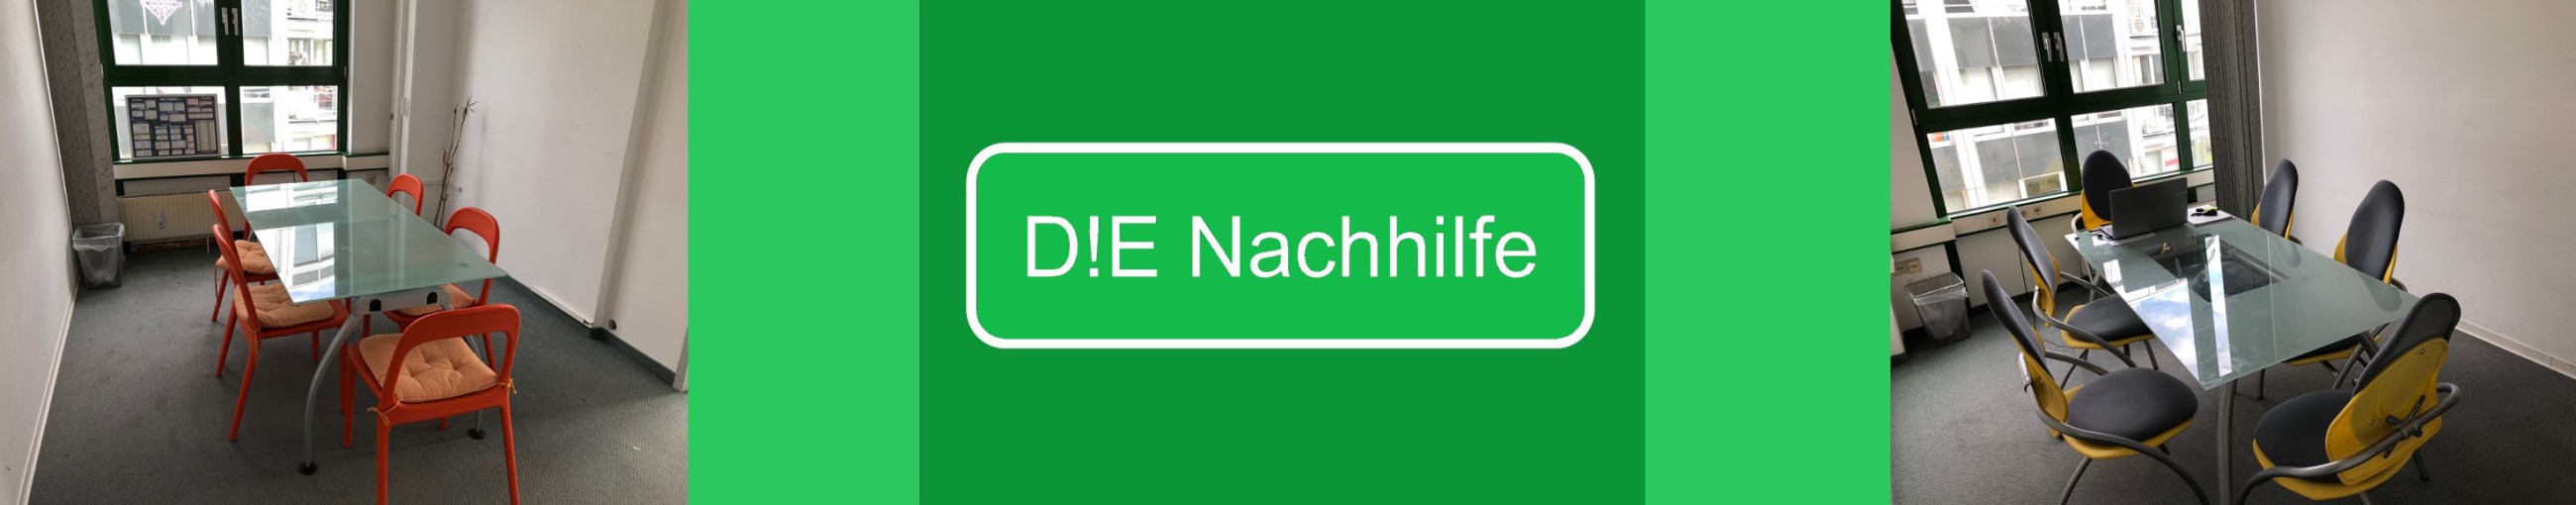 D!E NACHHILFE